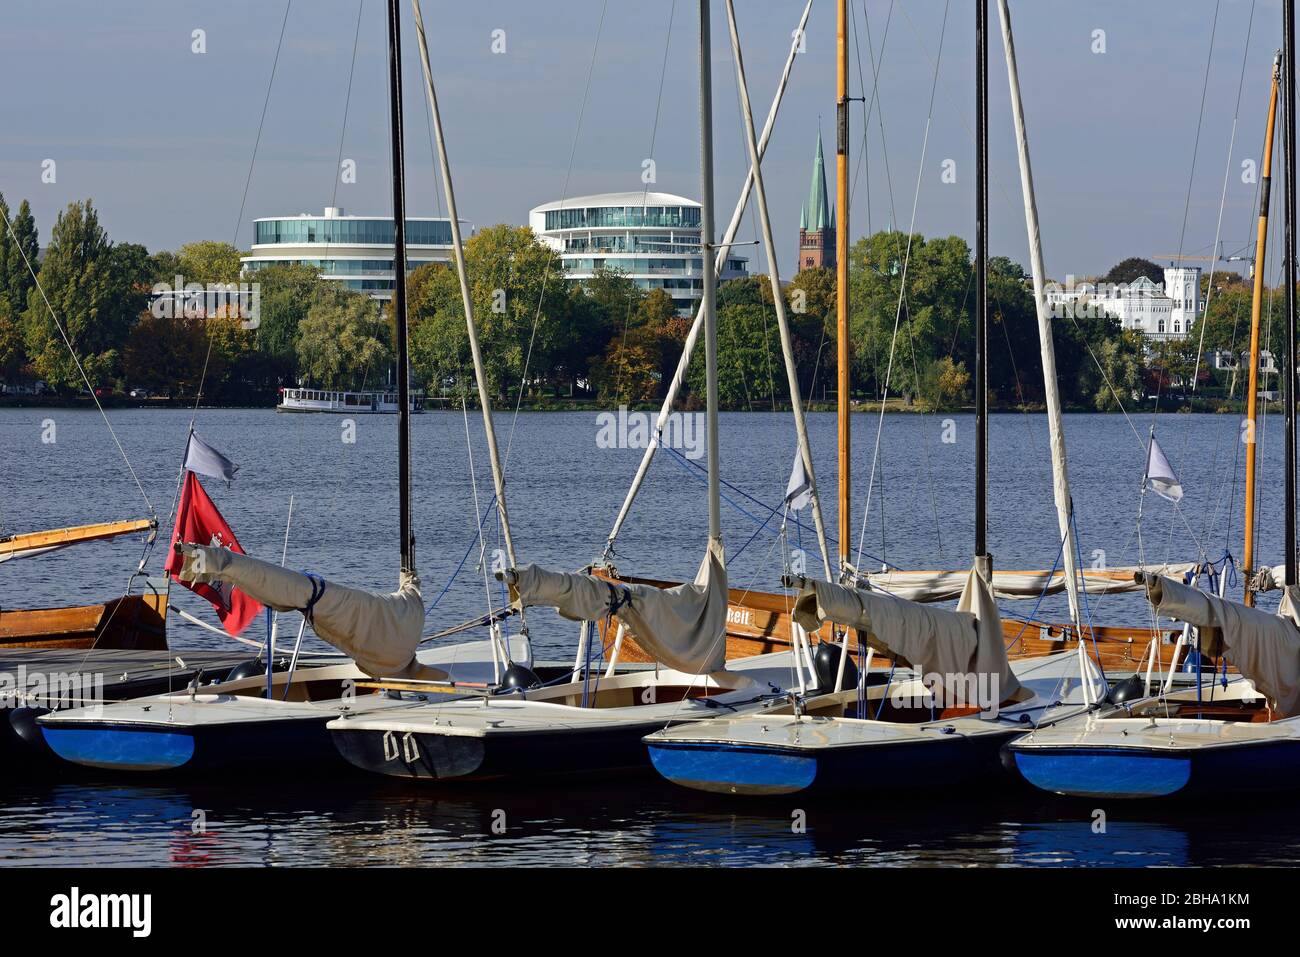 Europa, Germania, Amburgo, distretto di Eimsbüttel, Rotherbaum, hotel di lusso il Fontenay sul lago Alster esterno, barche a vela Foto Stock